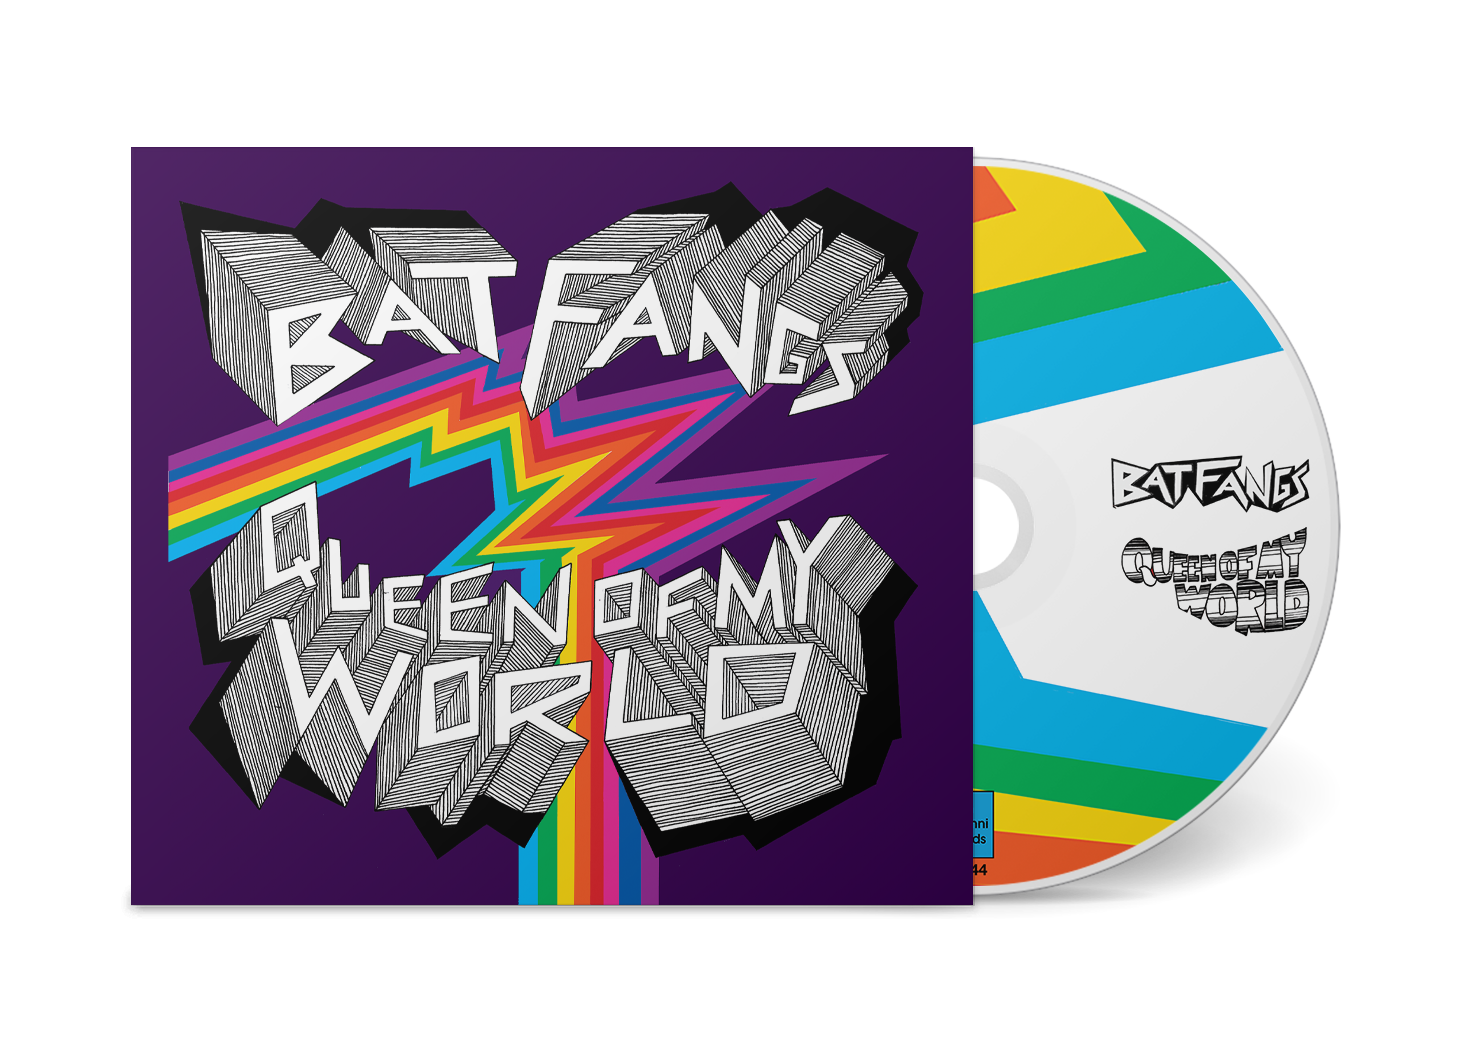 Bat Fangs "Queen Of My World" CD